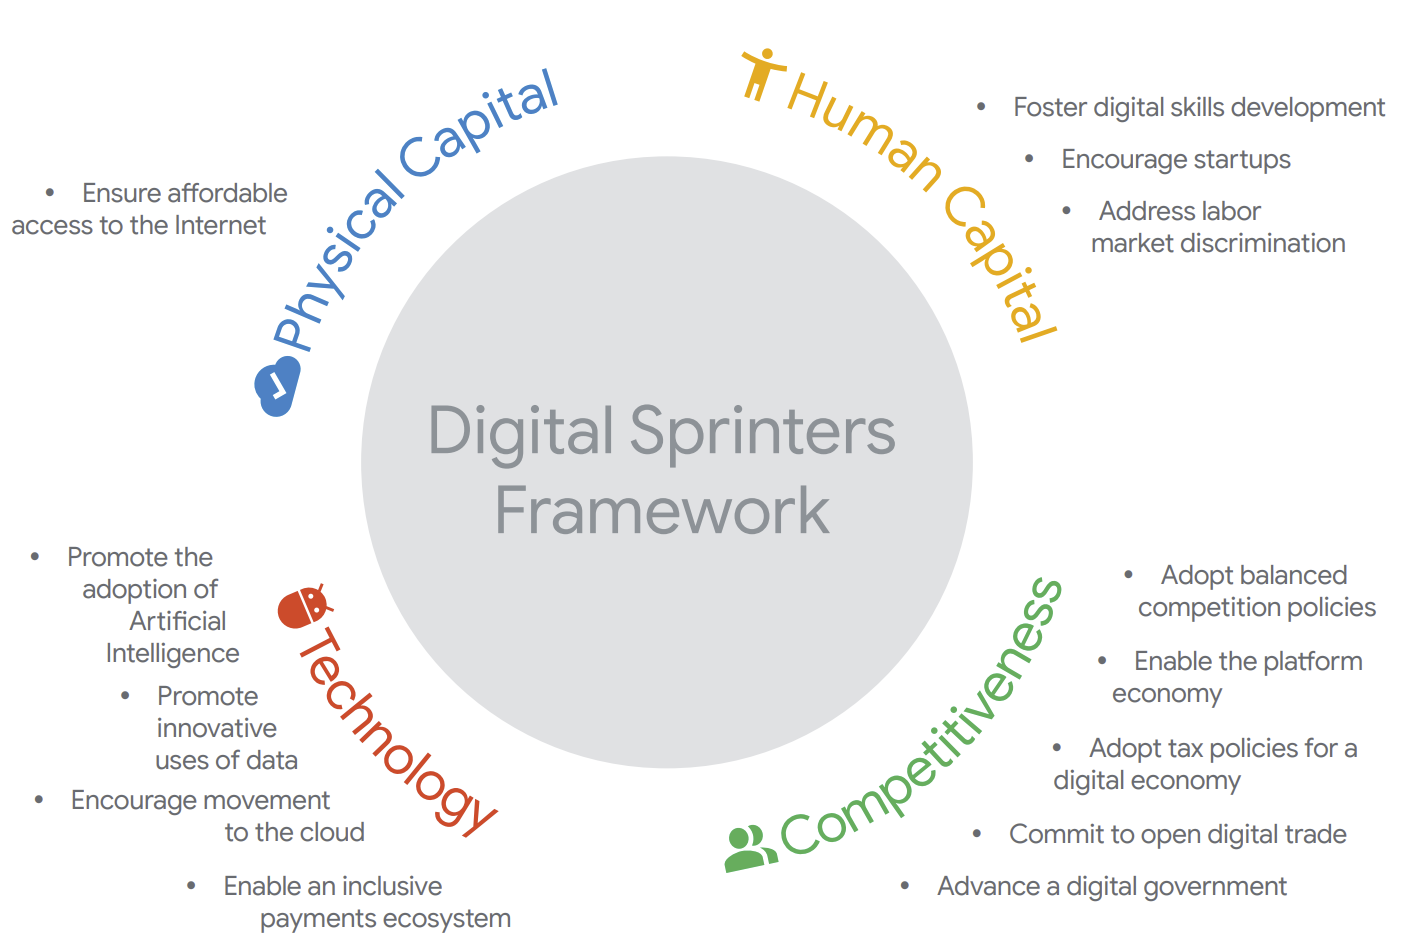 Digital Sprinters framework